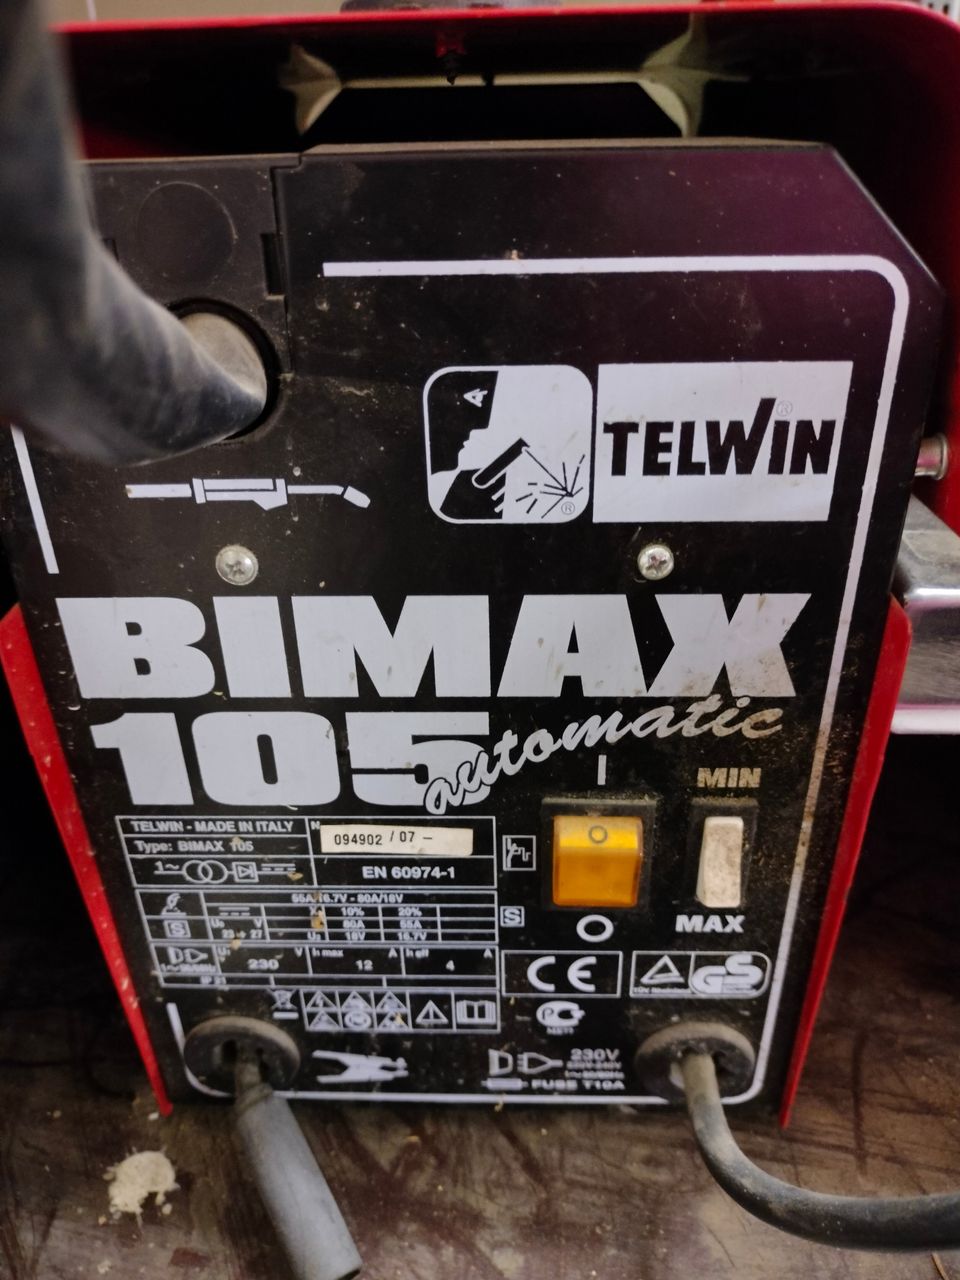 Hitsauskone BIMAX 105